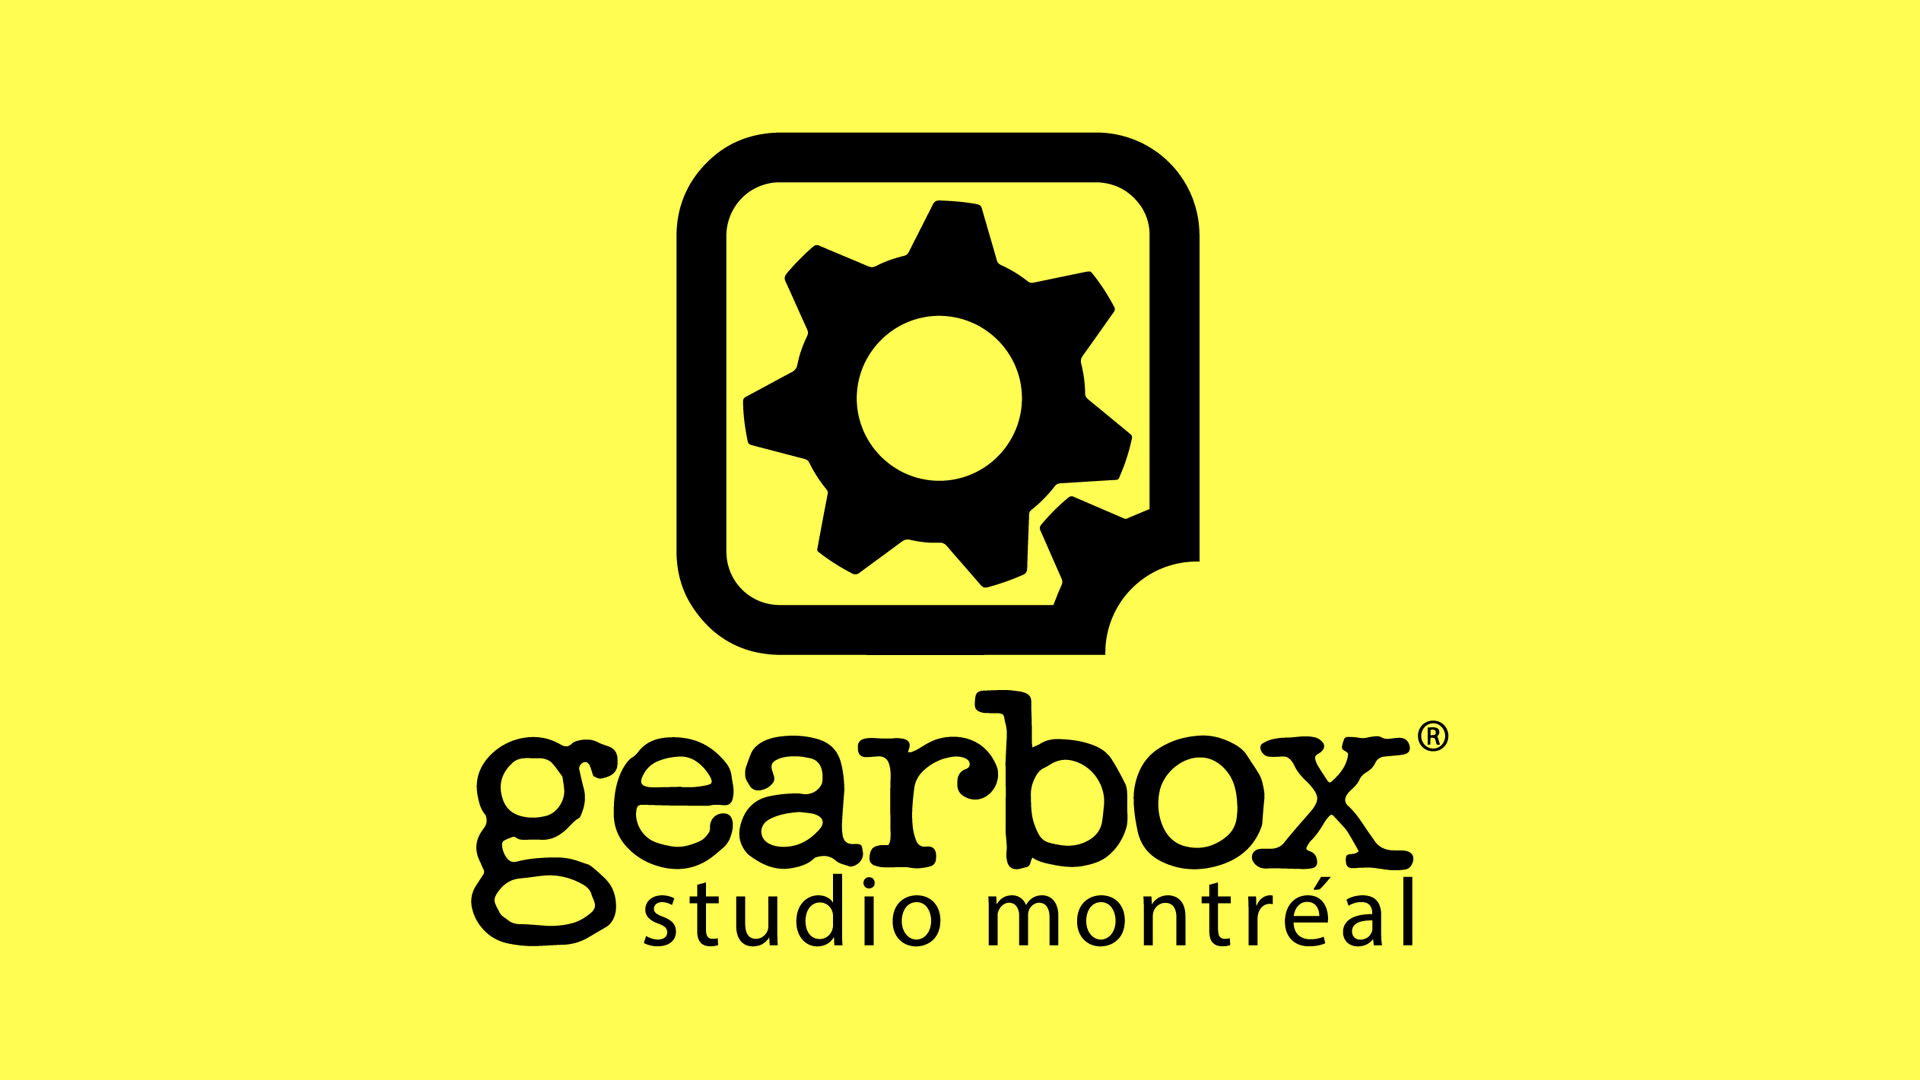 Gearbox Studio Montreal 08 26 21 1